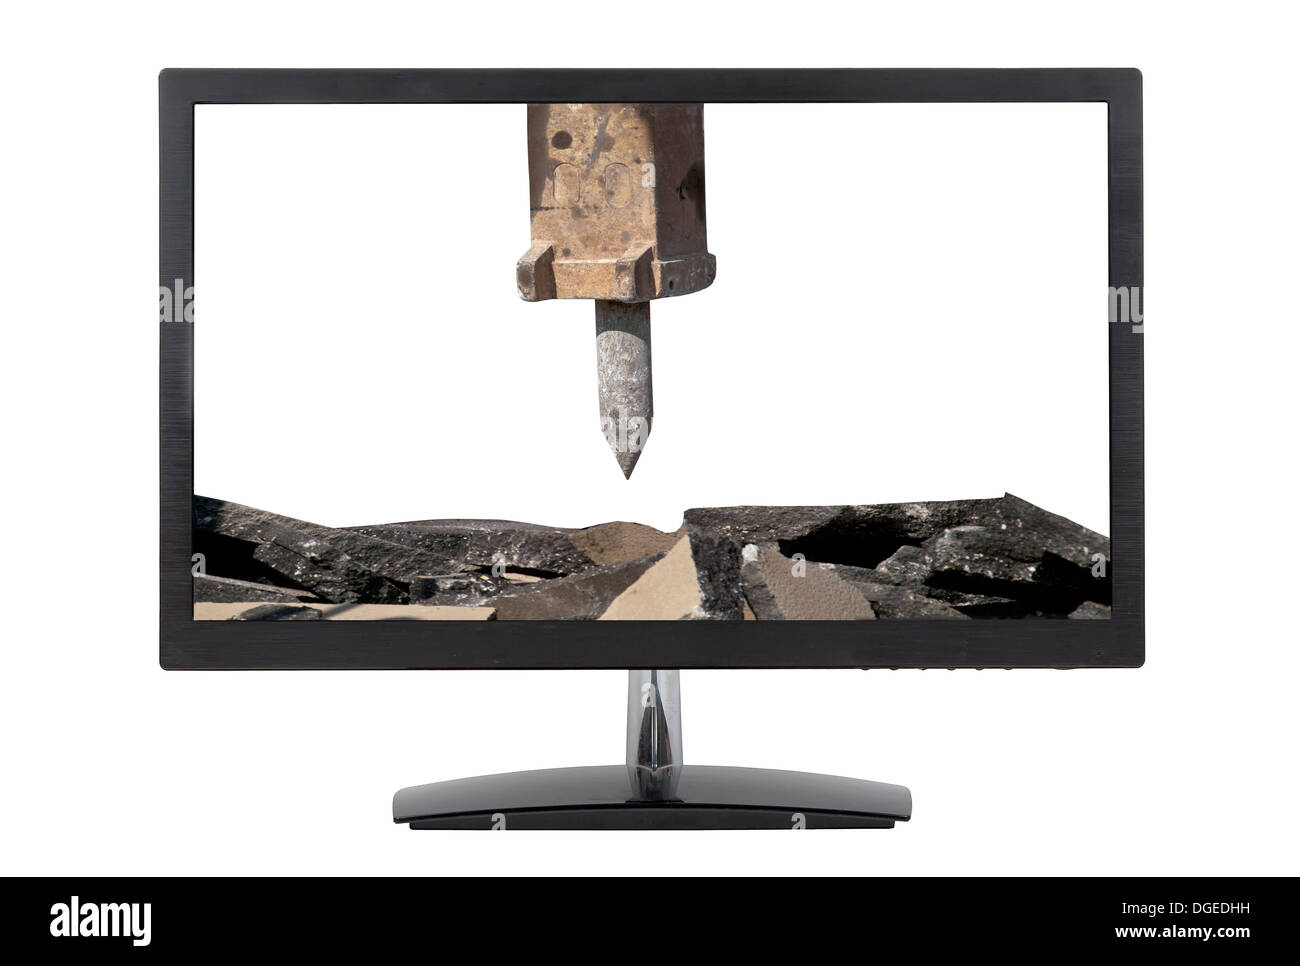 computer monitor Vs. jackhammer arm isolated on white background Stock Photo